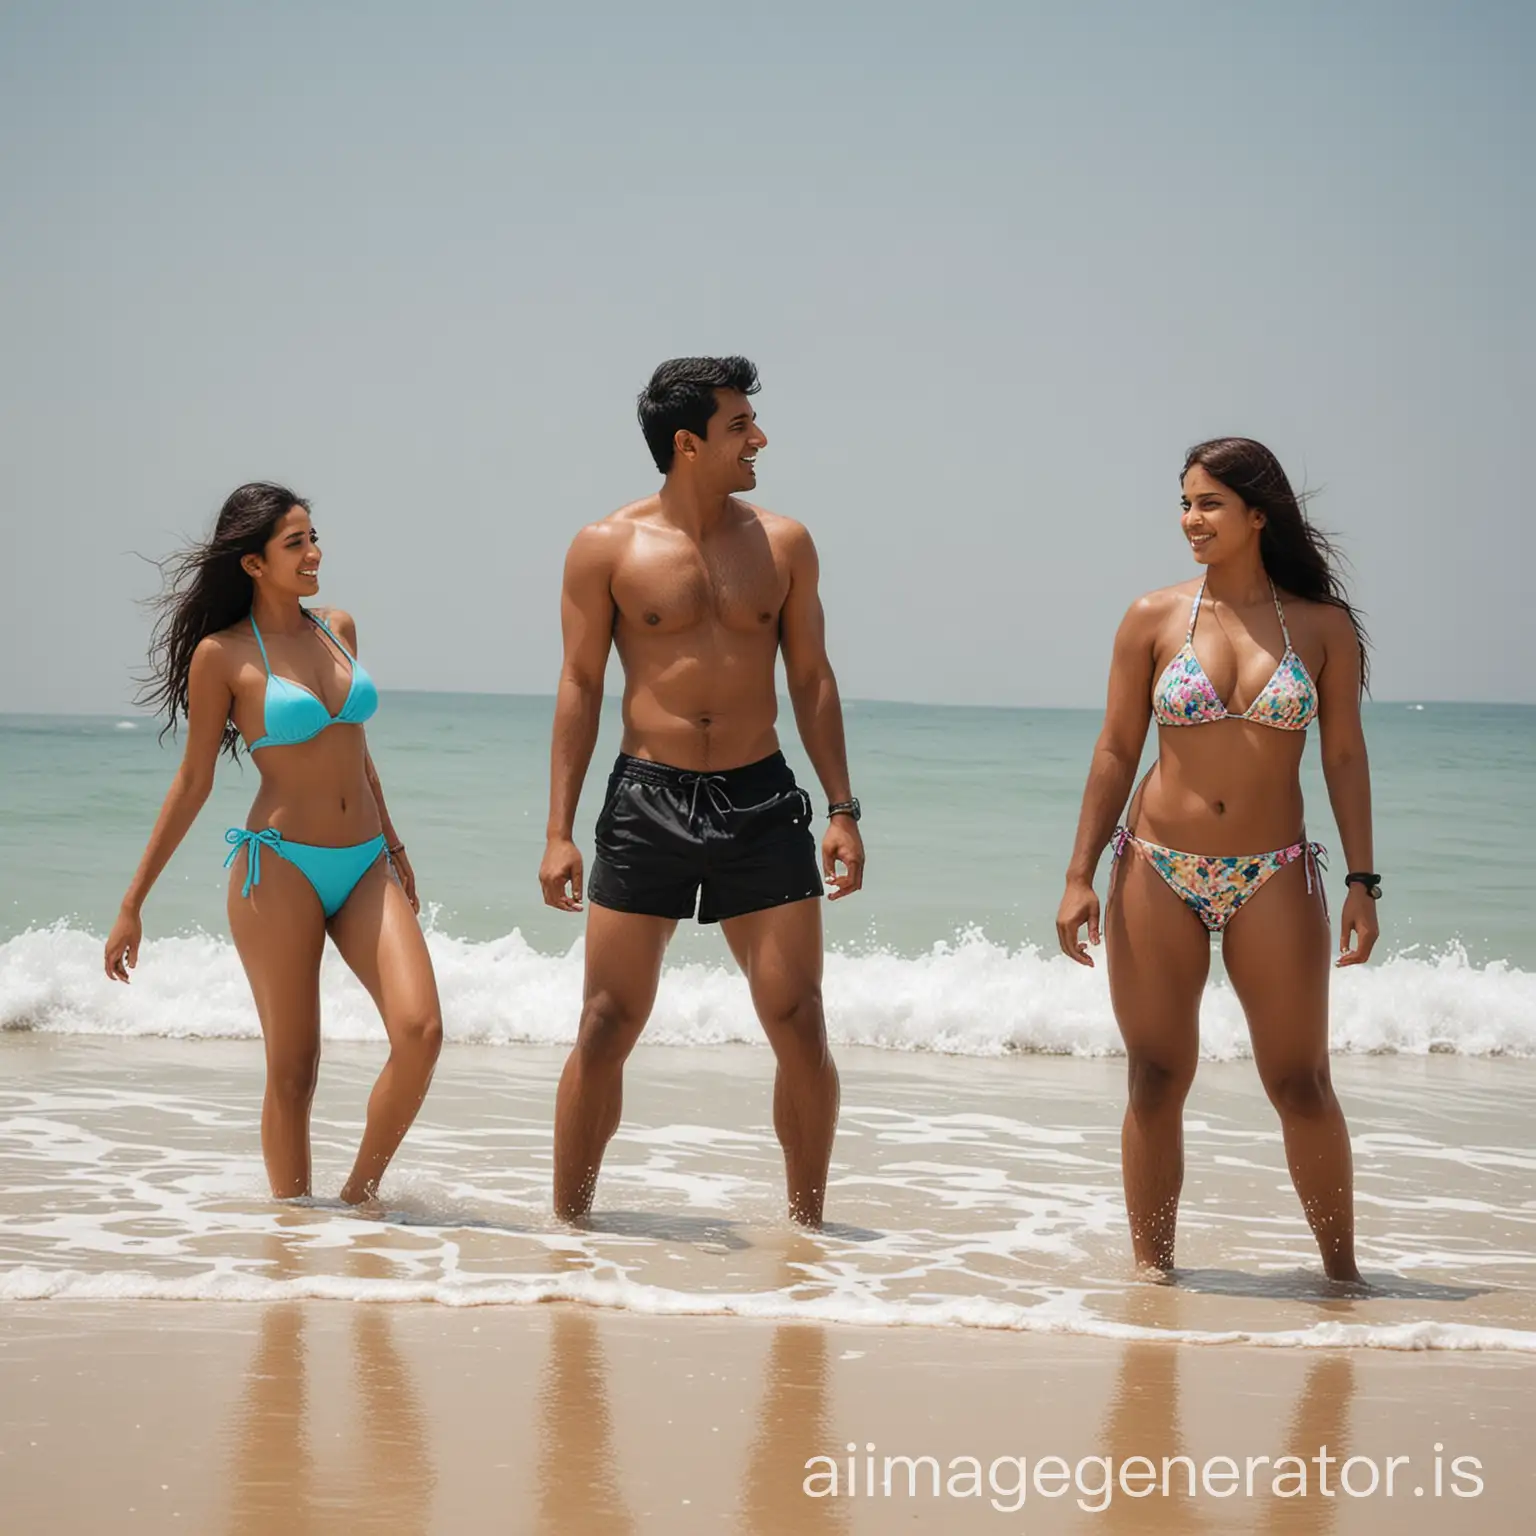 Indian man on beach around Indian girls in bikini